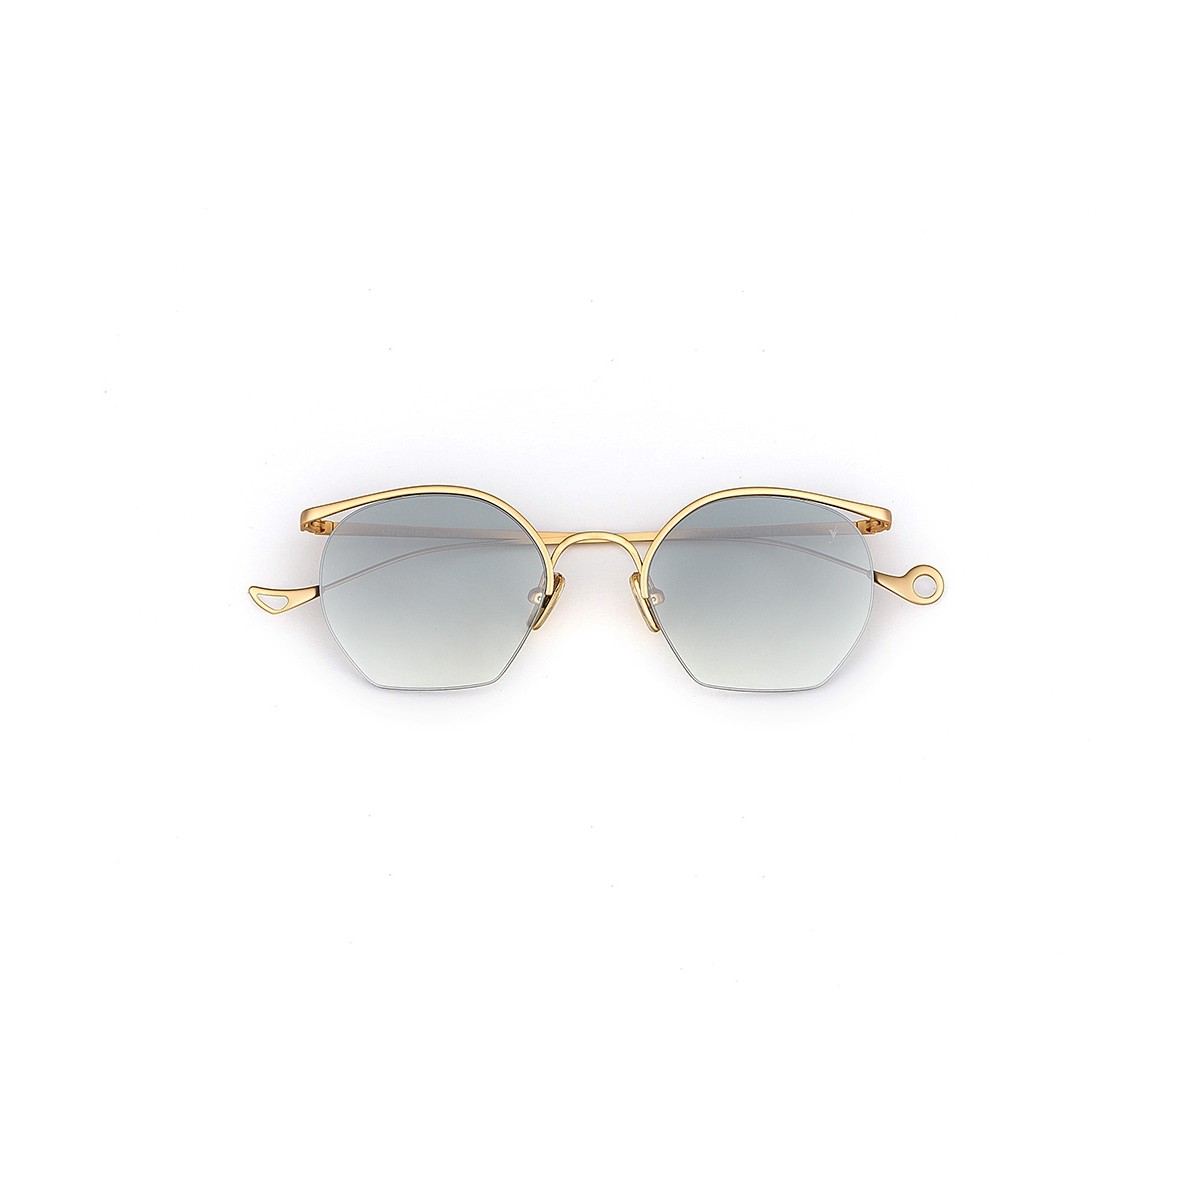 Tiberio" Eyepetizer sunglasses